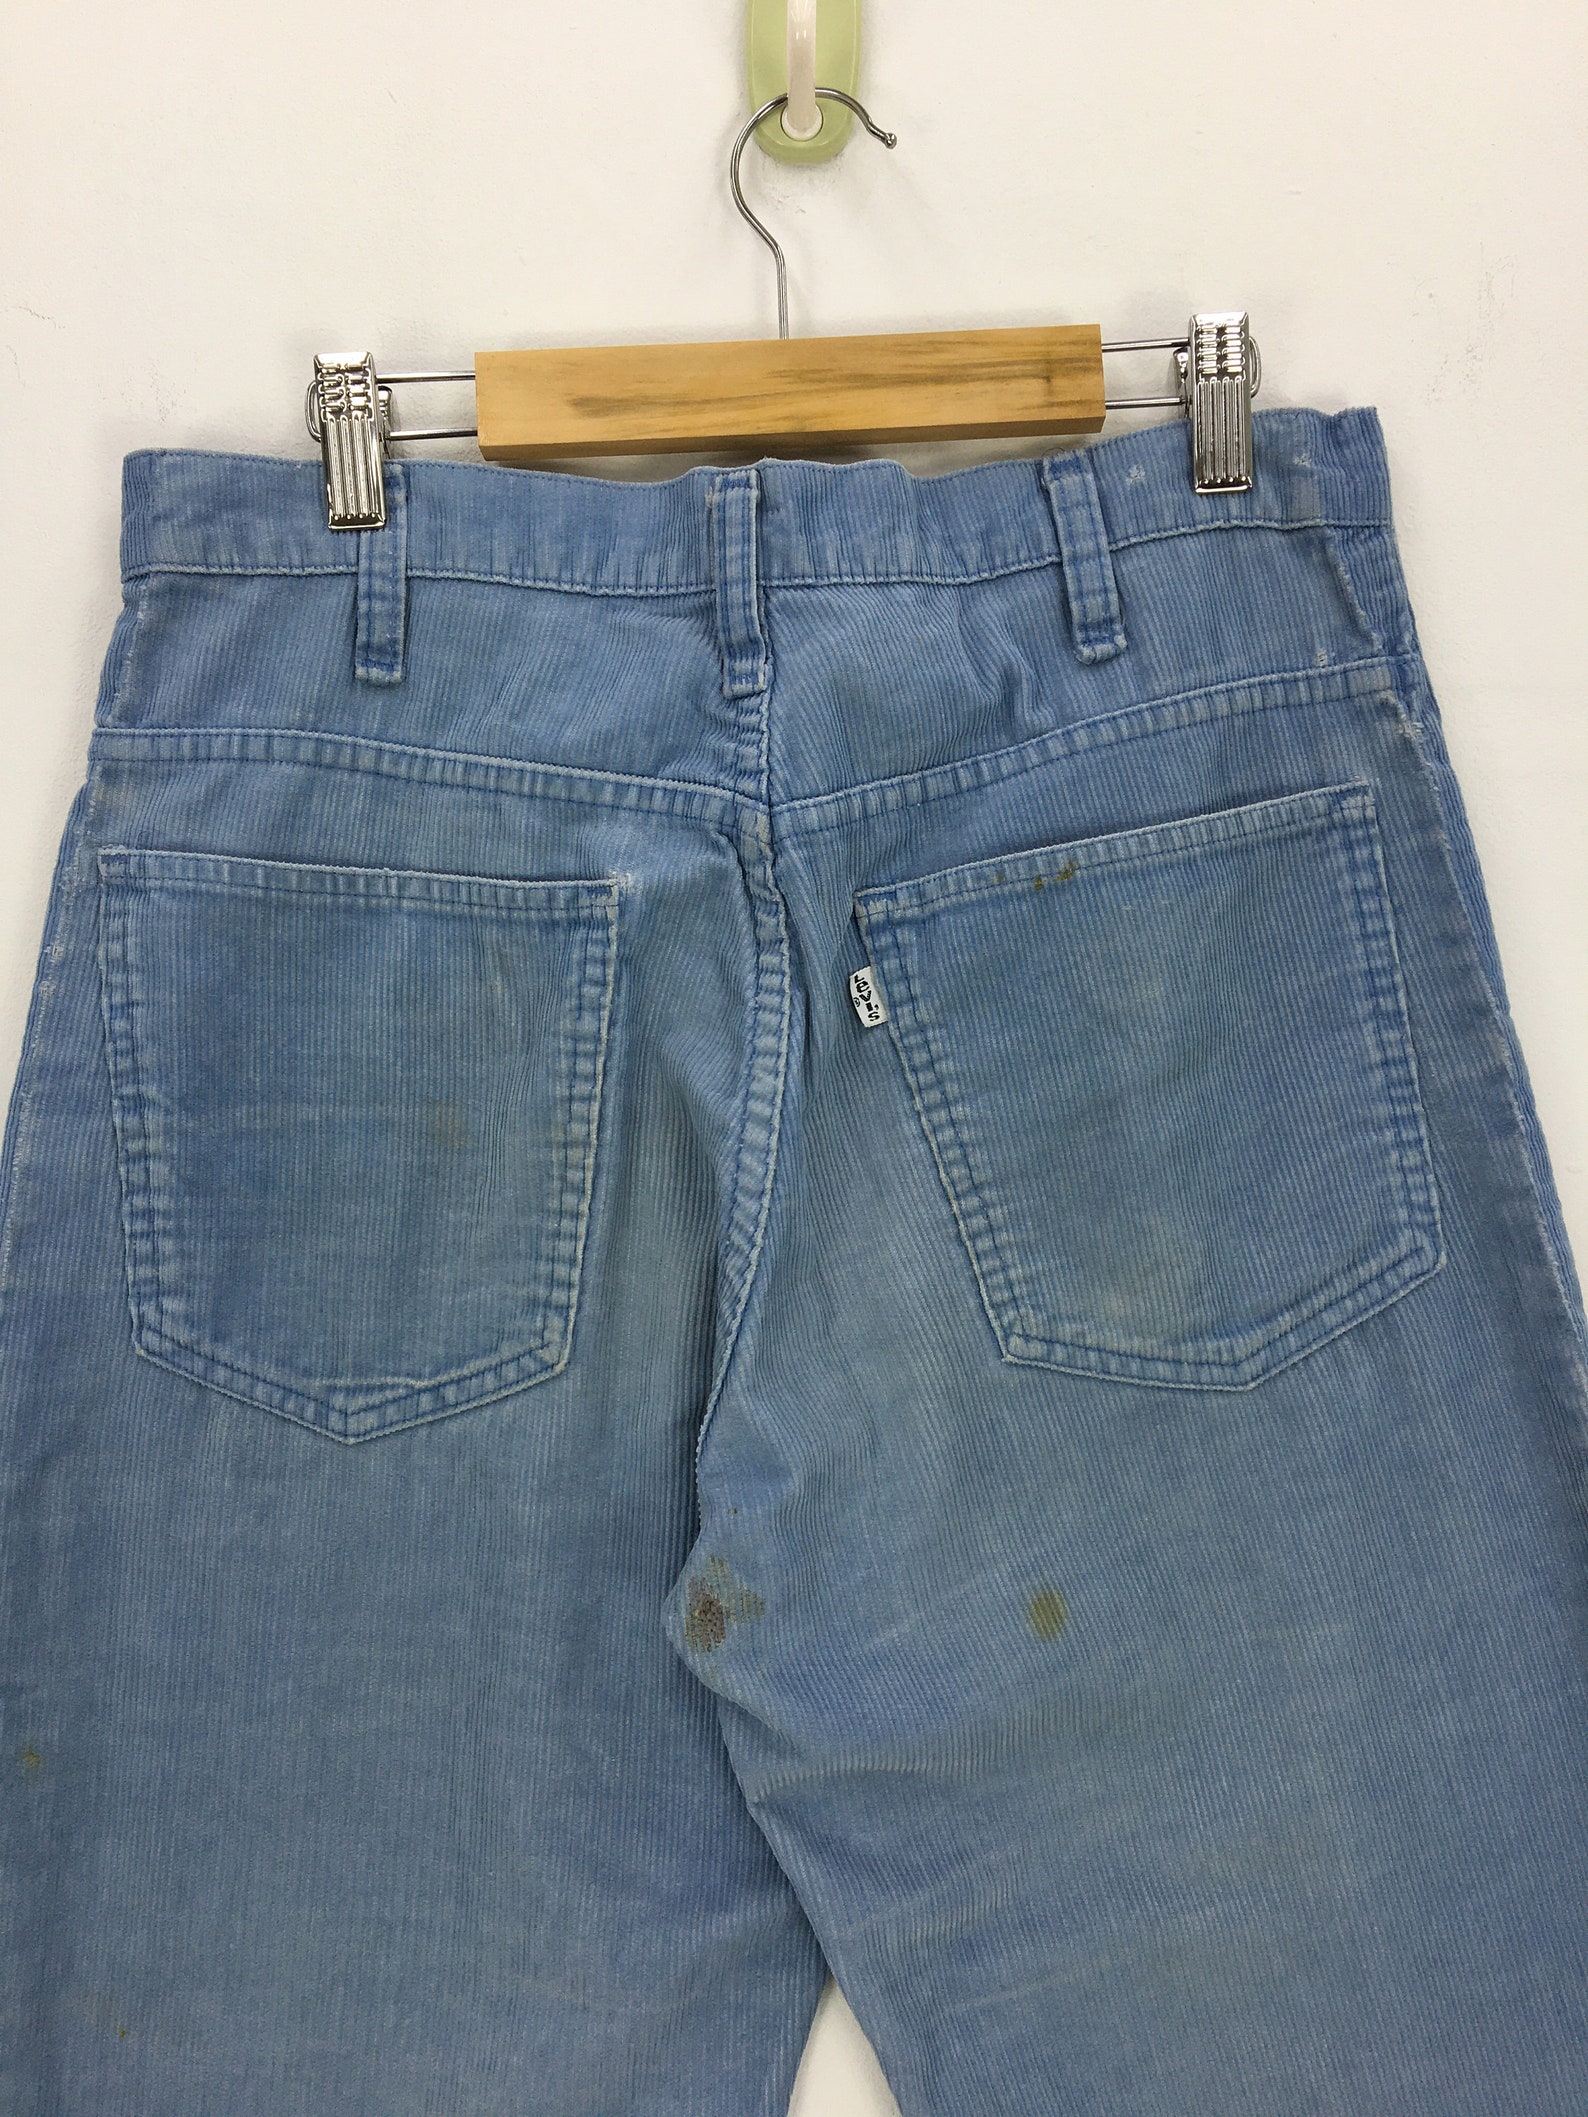 Vintage 70s Levis 501 Corduroy Jeans White Tag Denim Pants | Etsy